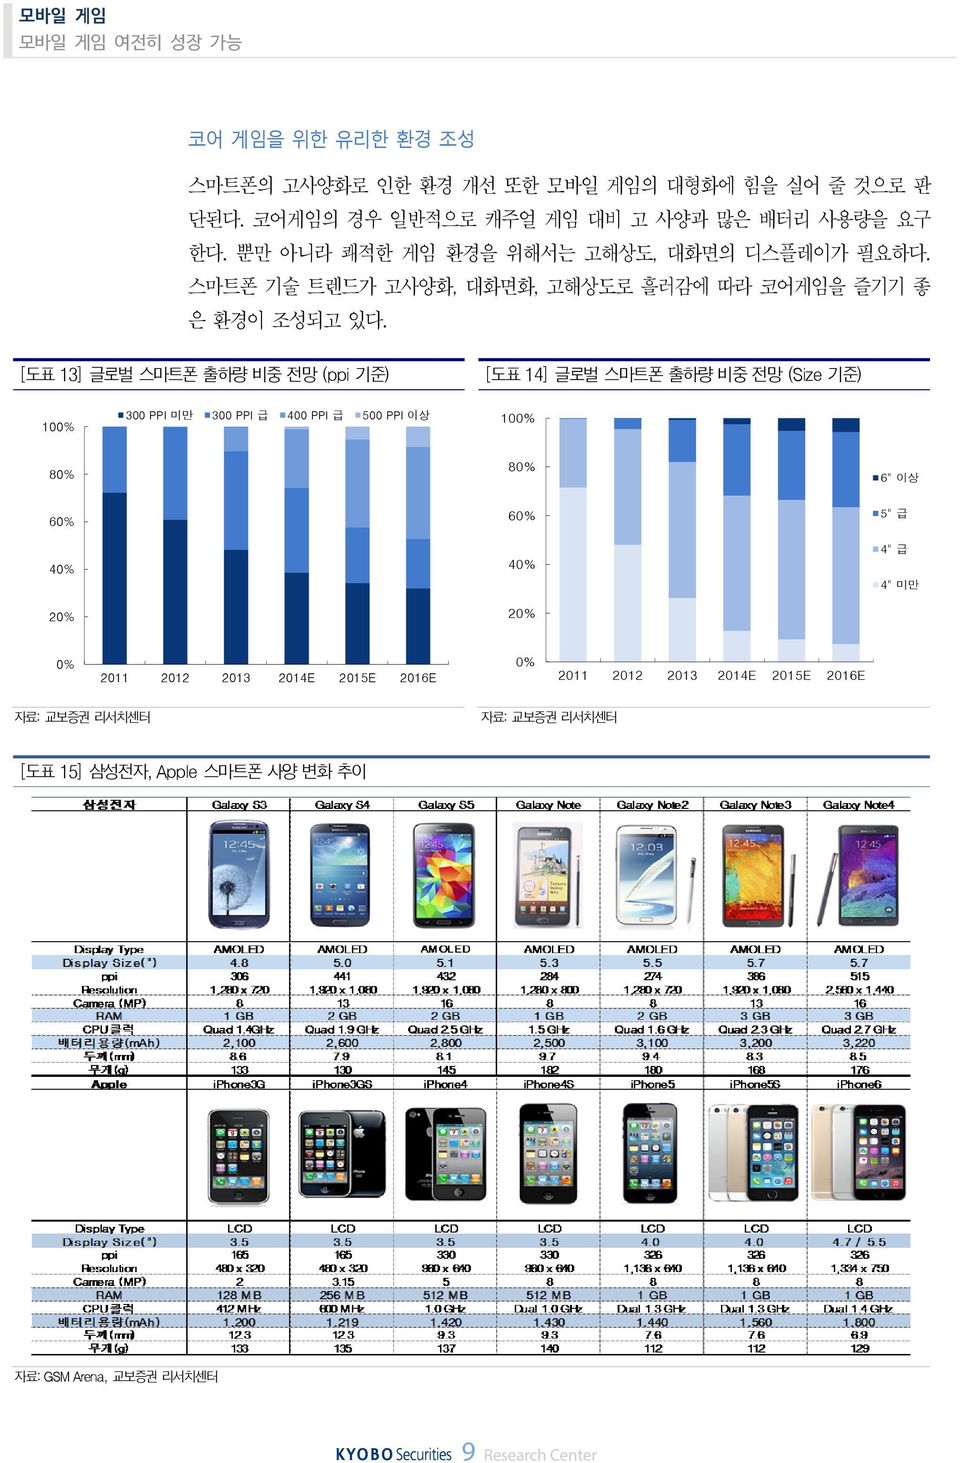 [도표 13] 글로벌 스마트폰 출하량 비중 전망 (ppi 기준) [도표 14] 글로벌 스마트폰 출하량 비중 전망 (Size 기준) 1% 3 PPI 미만 3 PPI 급 4 PPI 급 5 PPI 이상 1% 8% 8% 6" 이상 6% 4% 2%